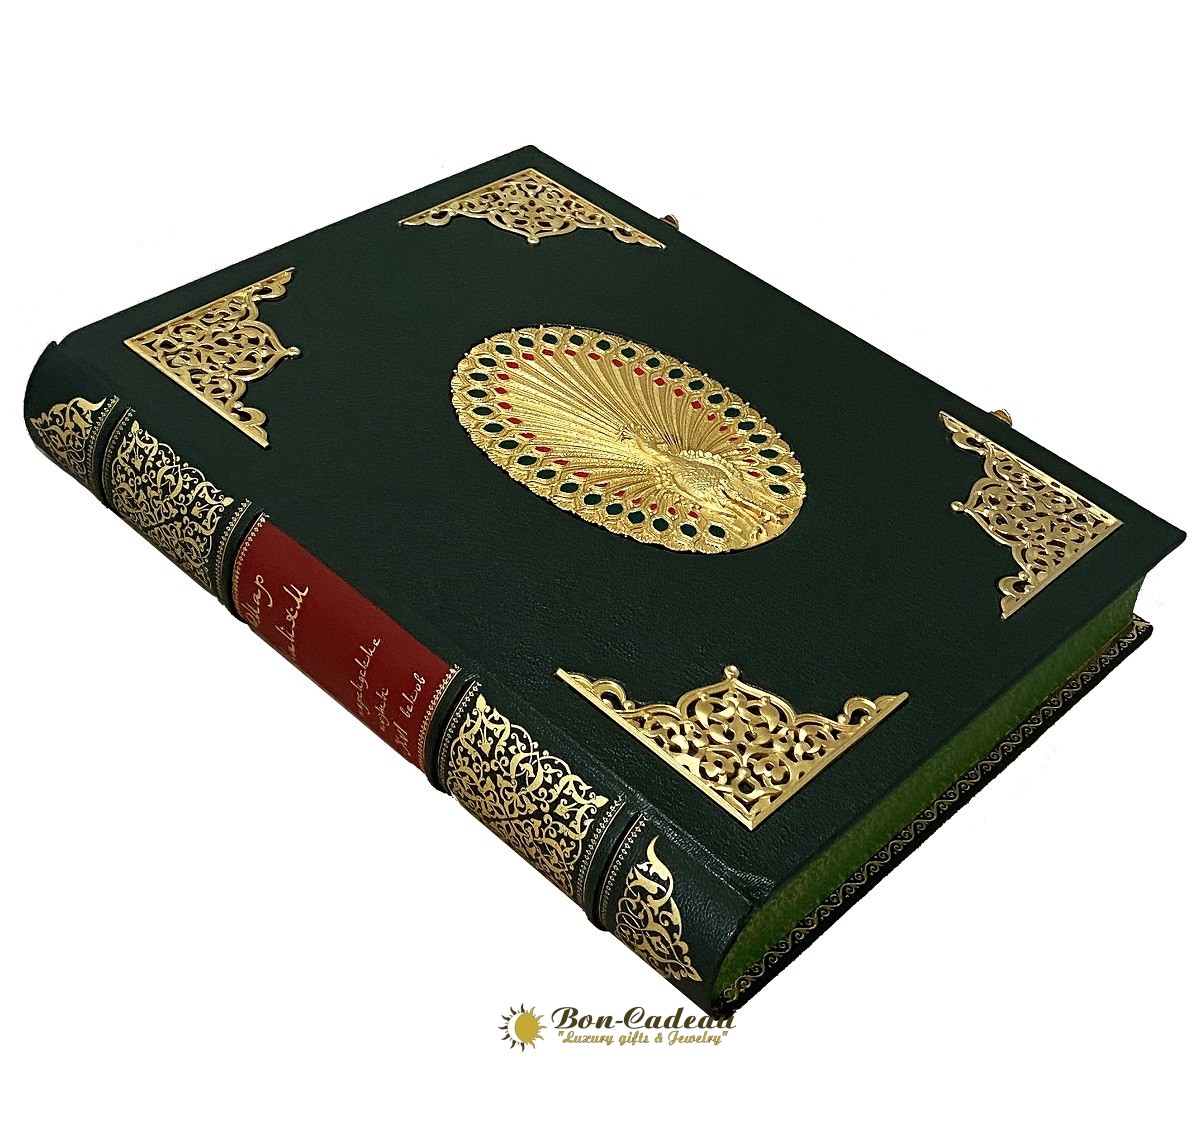 Книга Омар Хайям и персидские поэты X - XVI веков